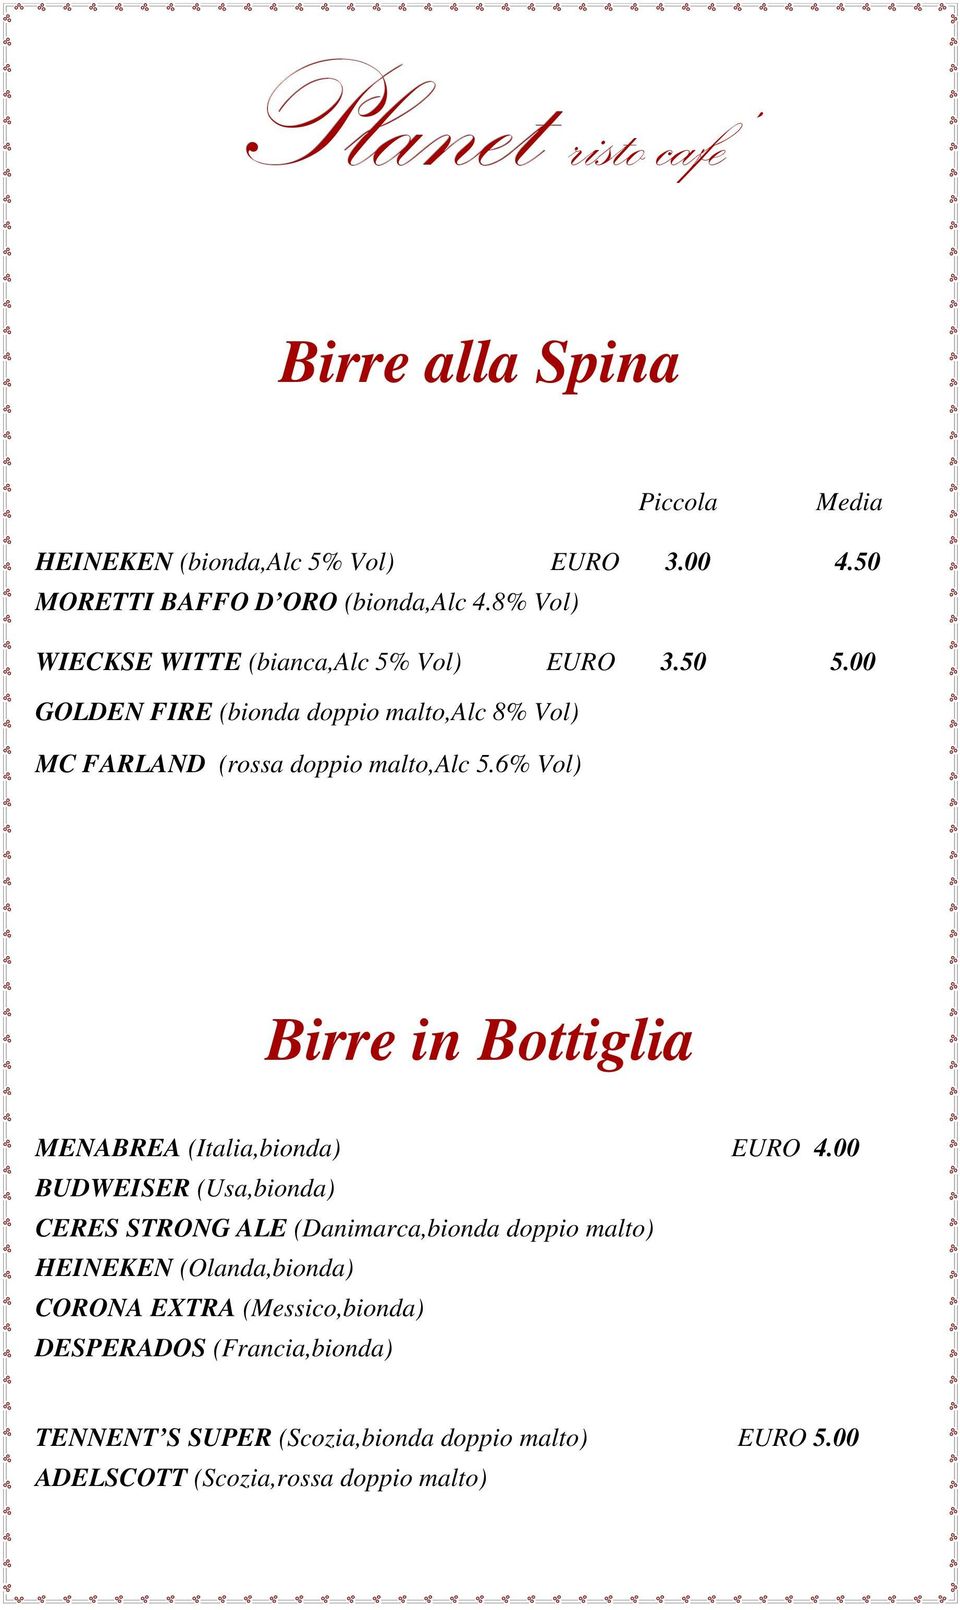 6% Vol) Birre in Bottiglia MENABREA (Italia,bionda) EURO 4.